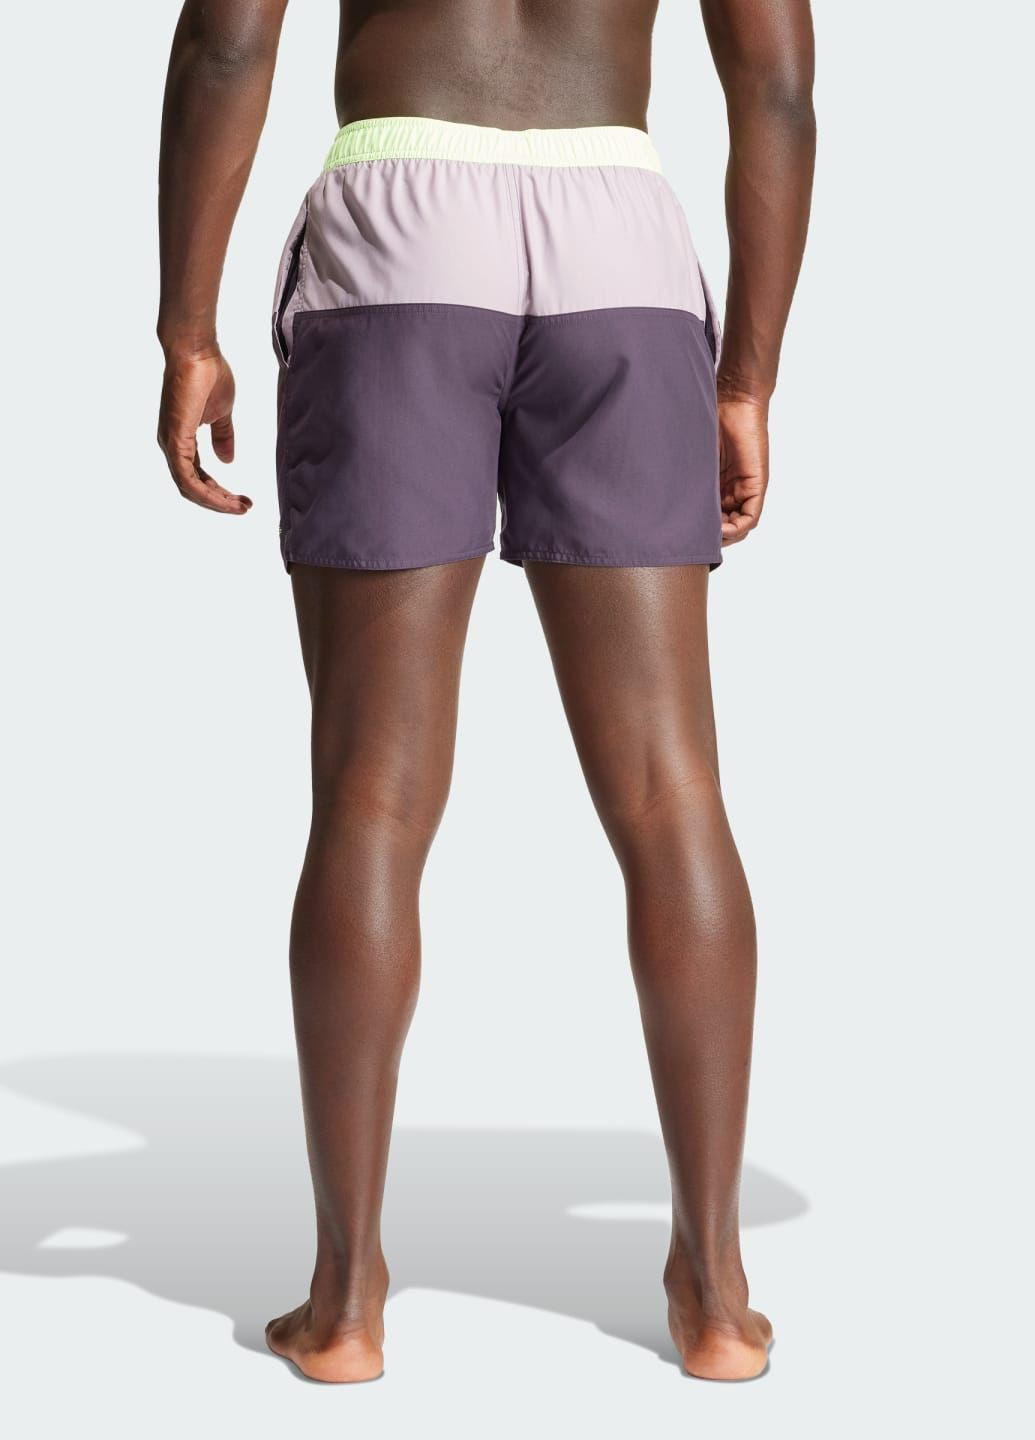 Мужские фиолетовые спортивные шорты для плавания colorblock clx adidas